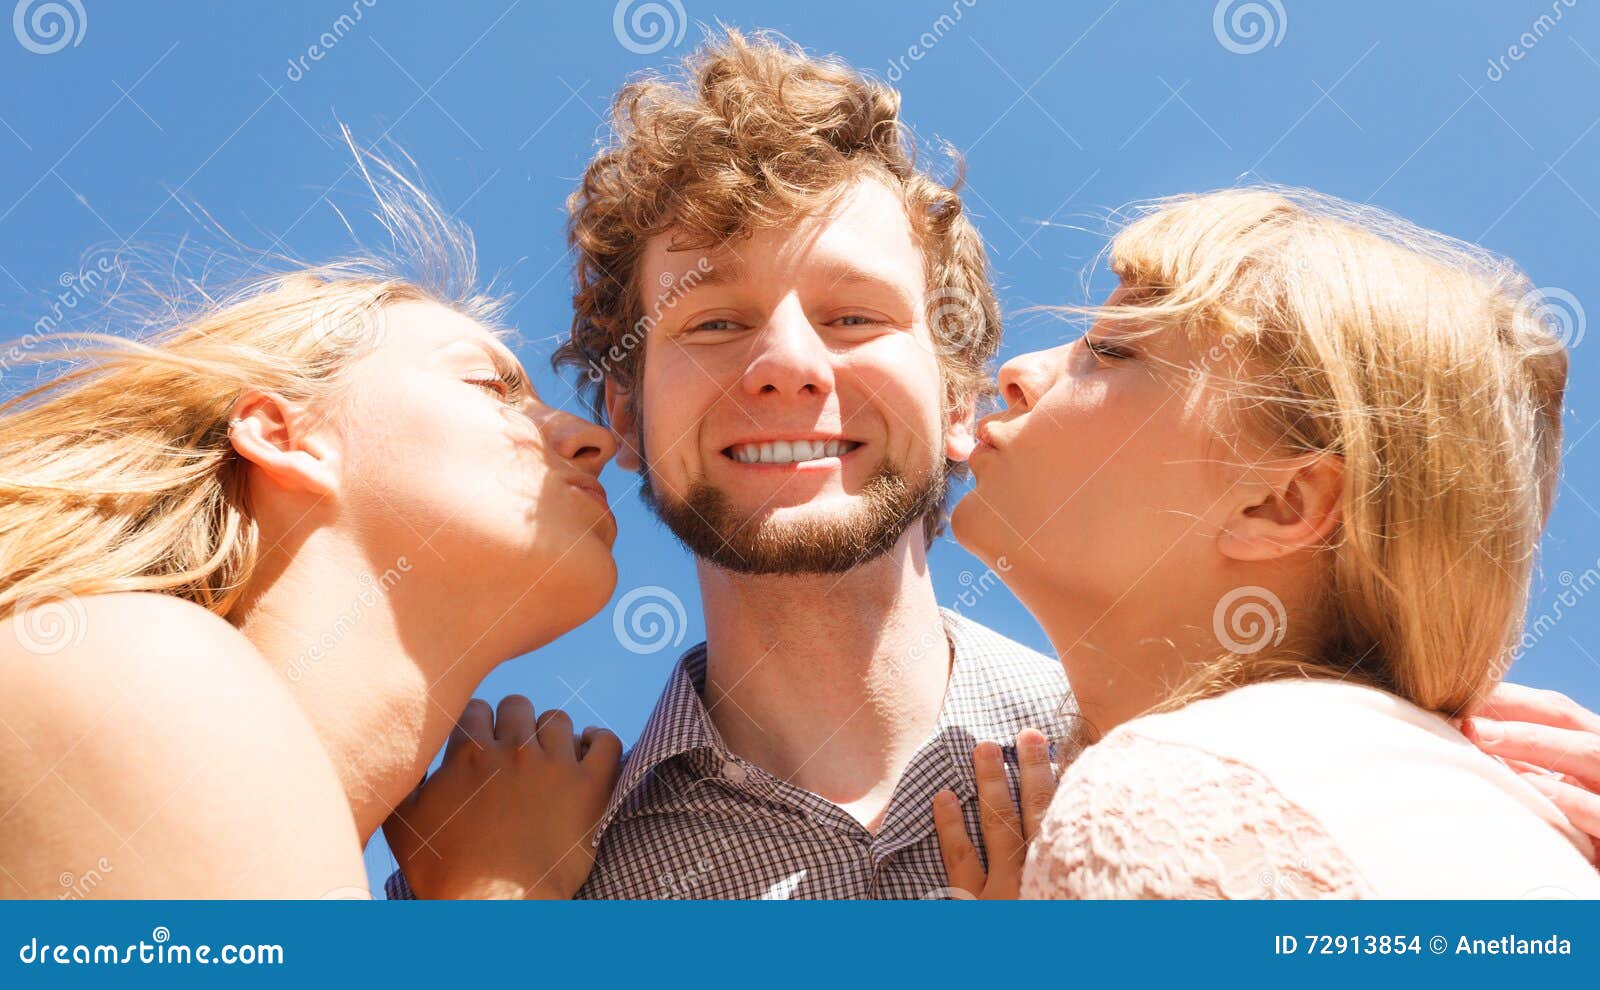 2 girls kissing 1 guy